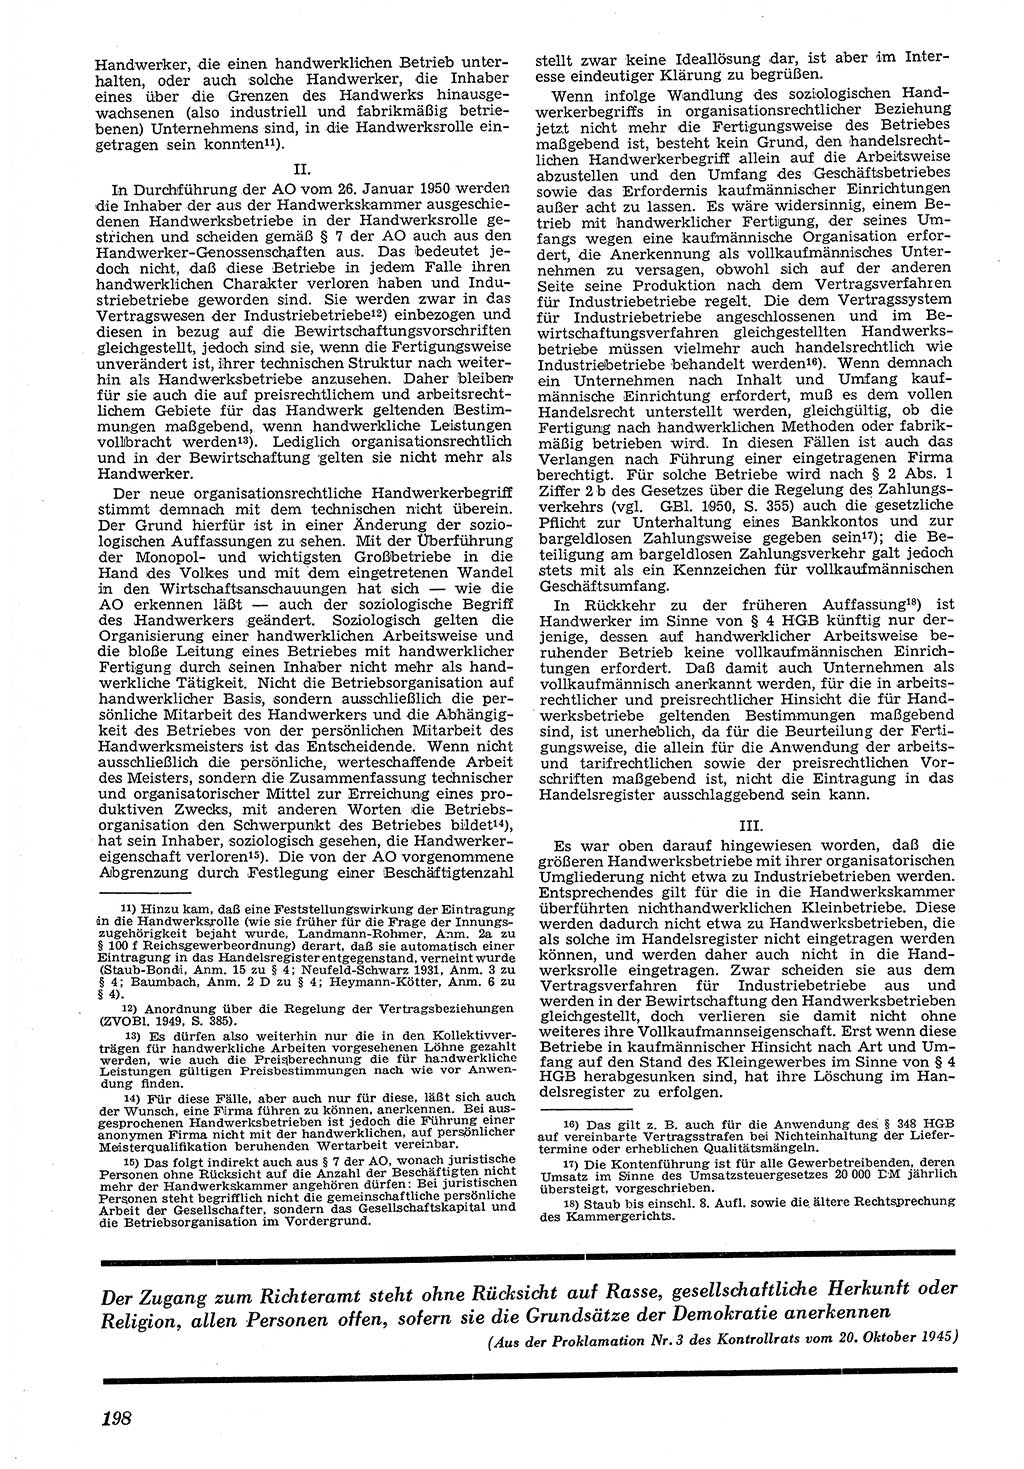 Neue Justiz (NJ), Zeitschrift für Recht und Rechtswissenschaft [Deutsche Demokratische Republik (DDR)], 4. Jahrgang 1950, Seite 198 (NJ DDR 1950, S. 198)